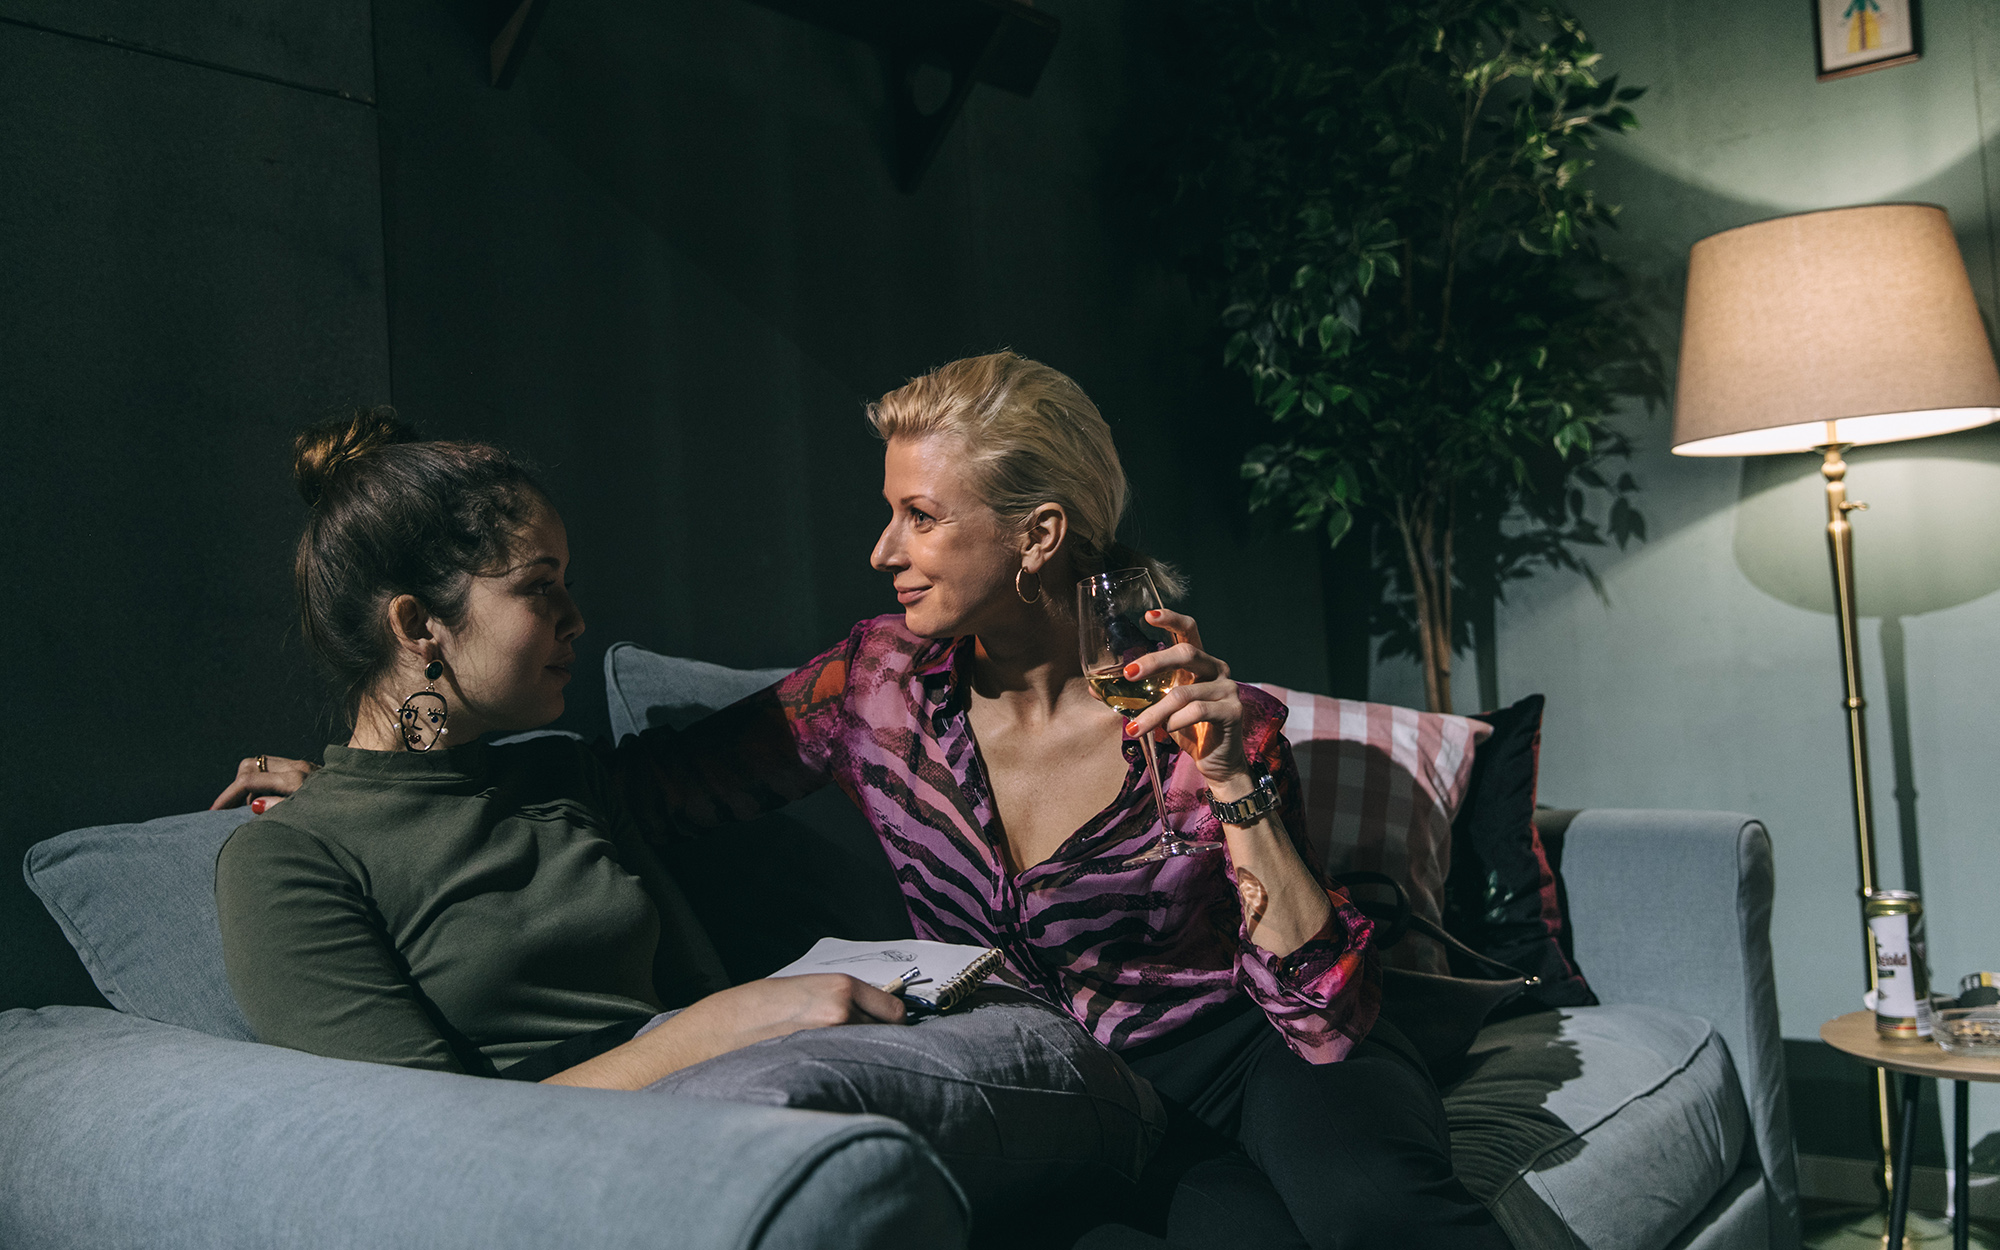 Tamala (Lara Wolf) in Maja (Tjaša Železnik) sedita na kavču v dnevni sobi in se pogovarjata. Tamala ima v rokah skicirko in svinčnik, Maja pa kozarec oranžnega vina. Avtor fotografije: Peter Giodani.